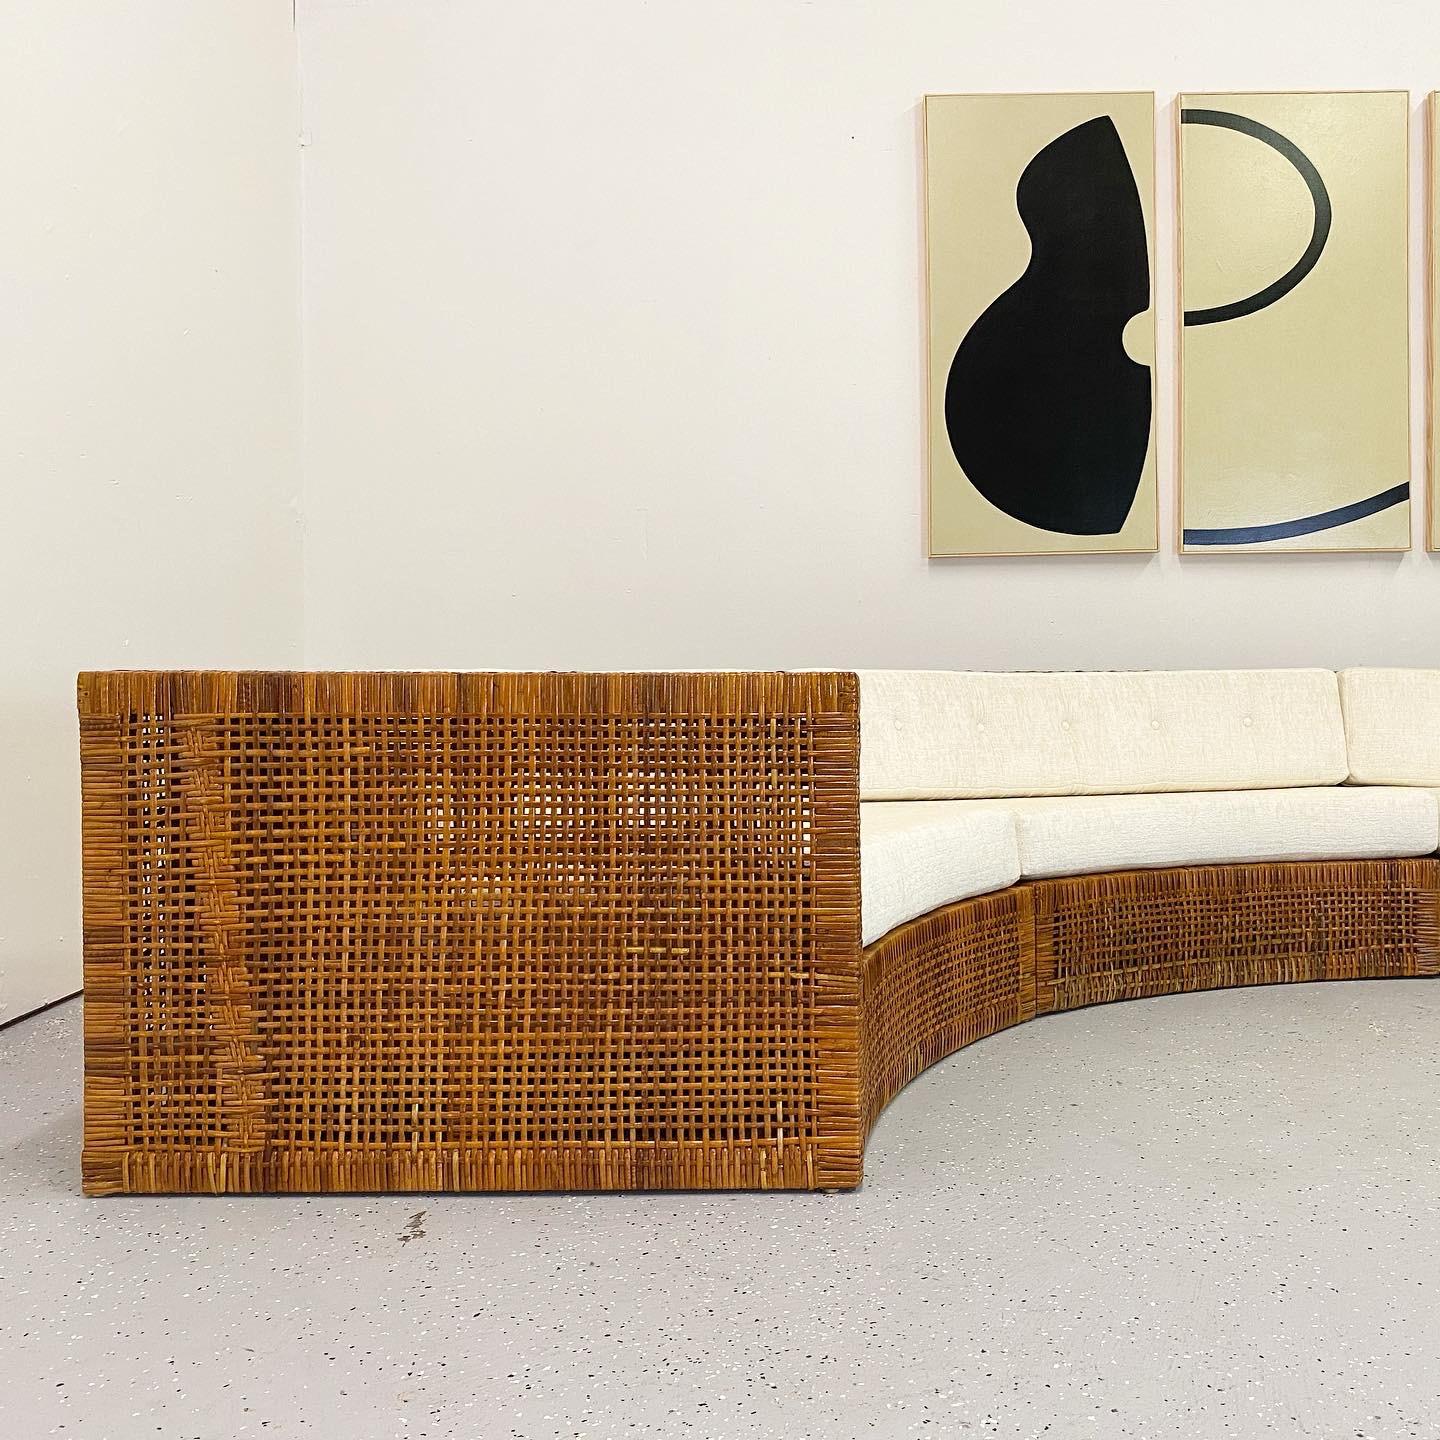 Un exceptionnel et rare canapé de quatre pièces conçu par Danny Ho Fong pour Tropi-Cal. C'est le seul exemple de ce canapé sur le marché. Magnifique rotin tressé sur un cadre en acajou. Massive à l'échelle, elle mesure 14 pieds de large.